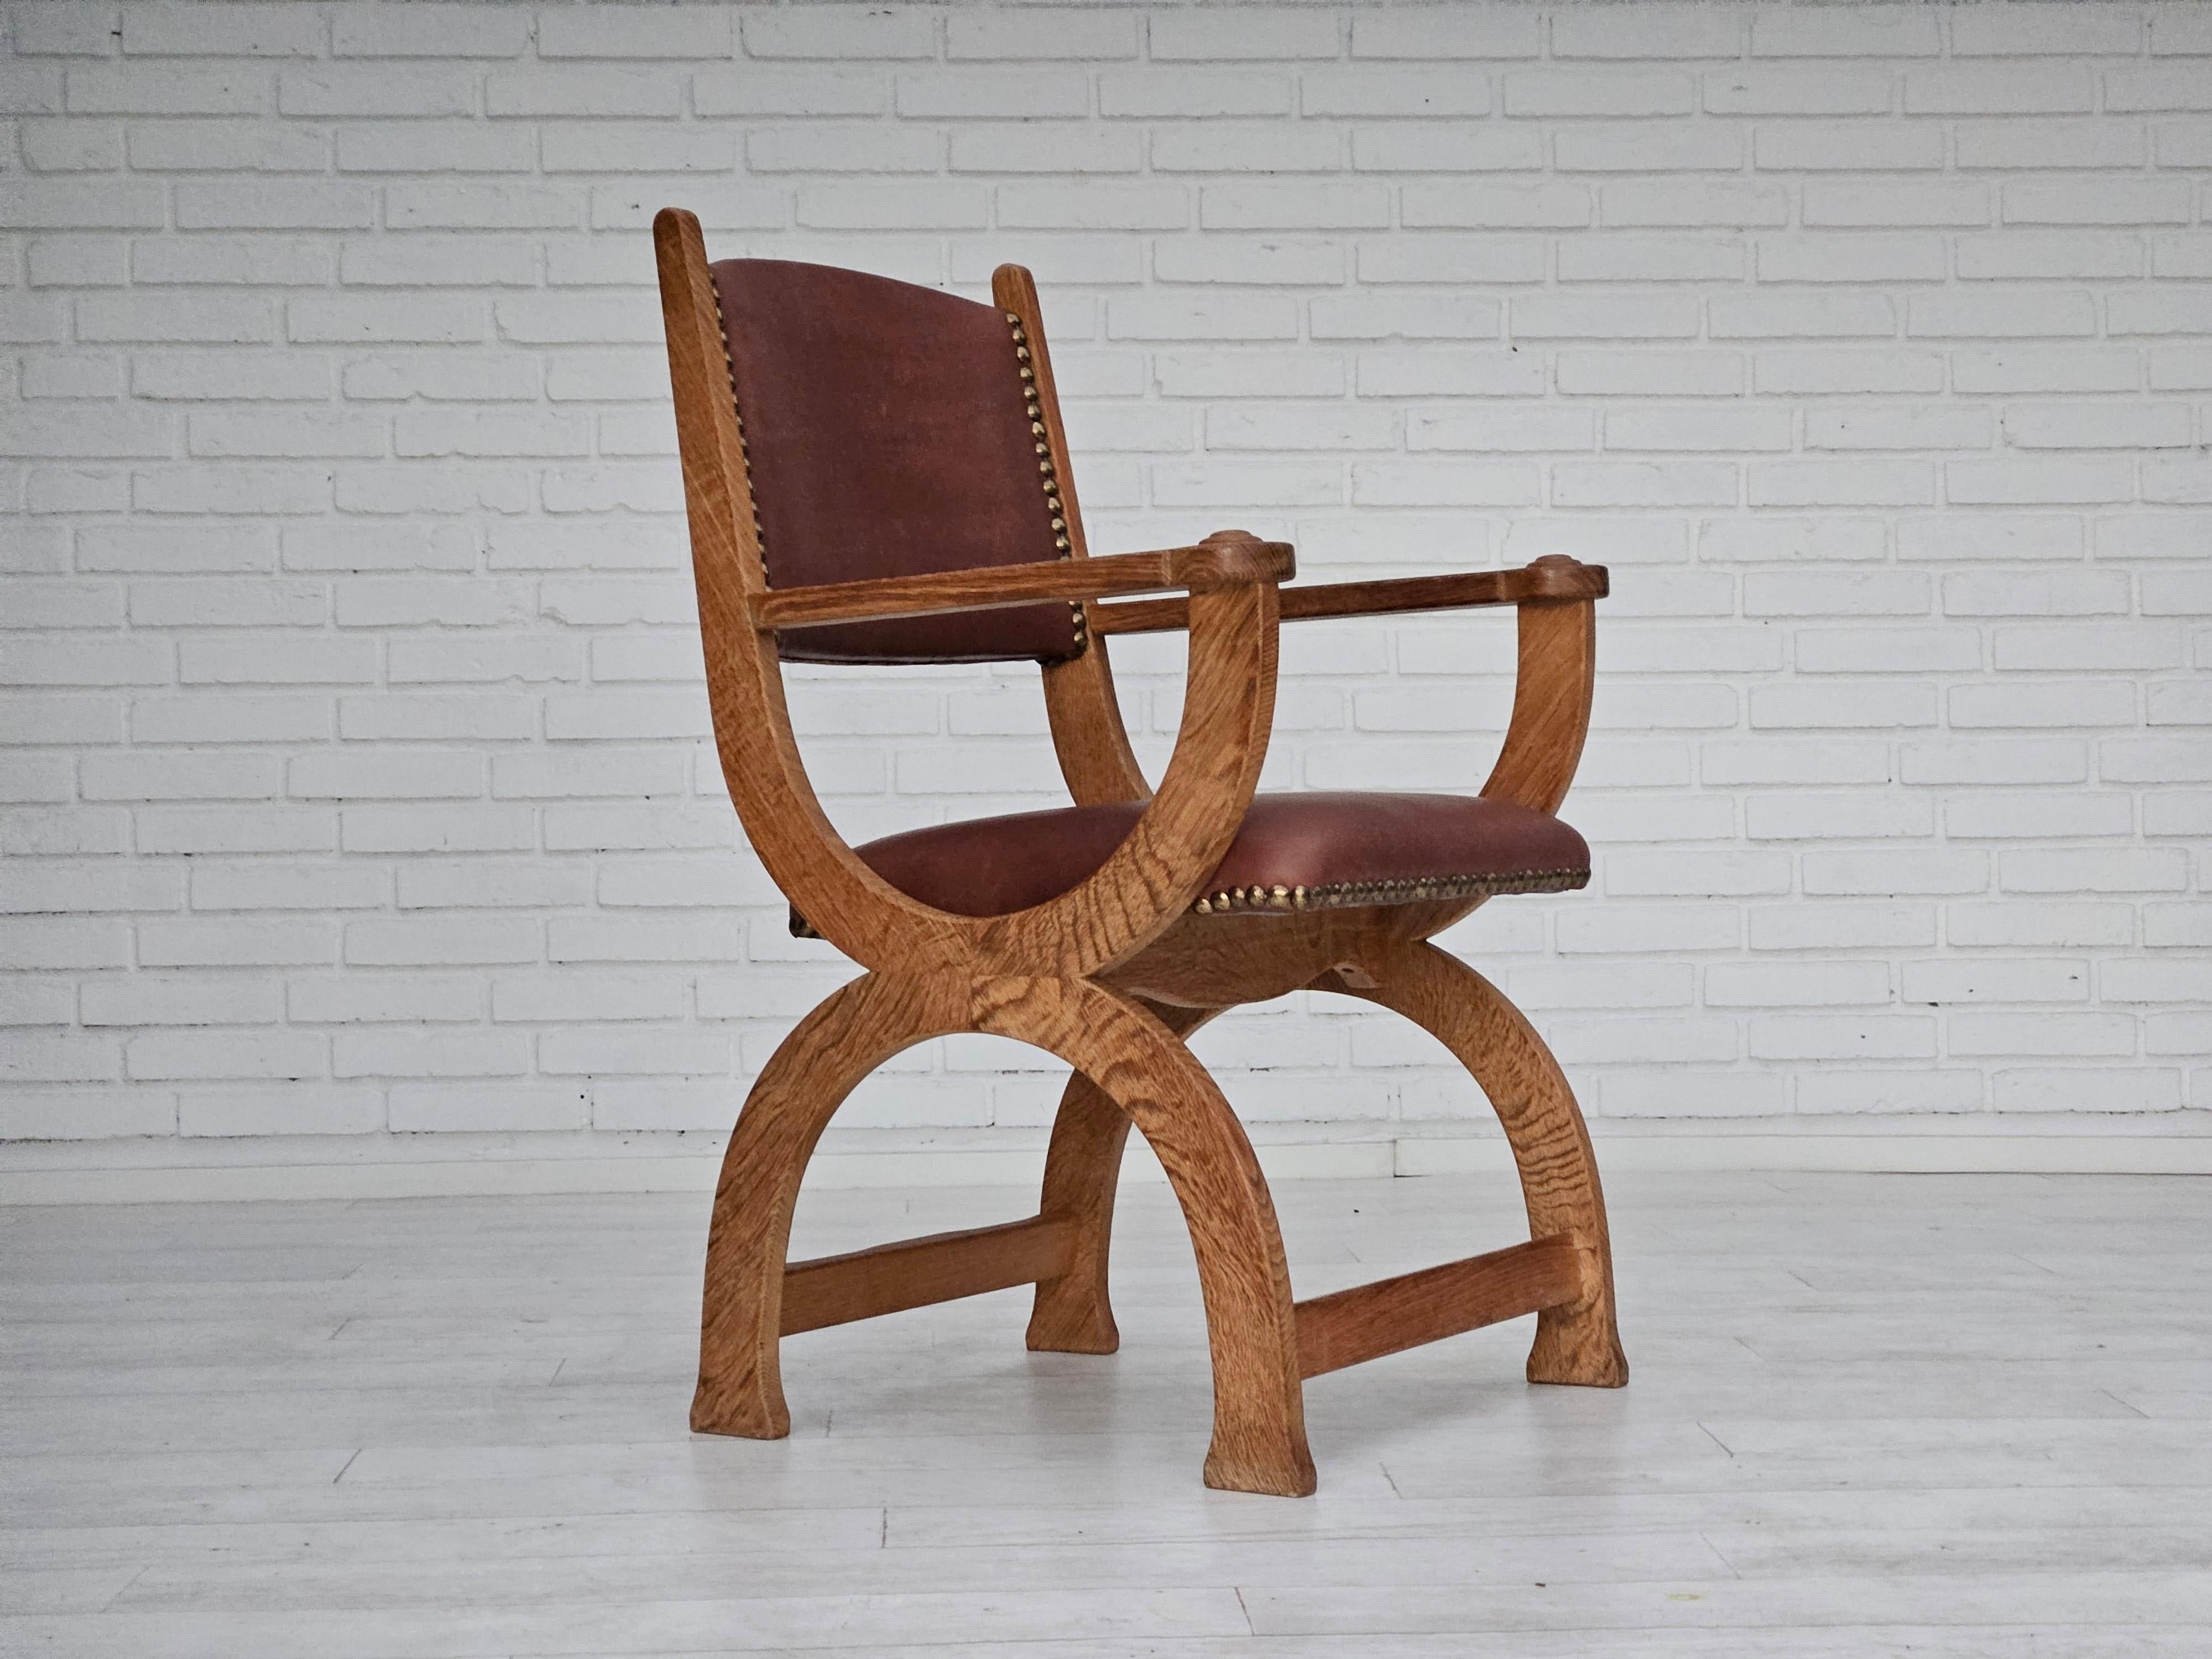 Années 1950, Design/One. Fauteuil retapissé en cuir naturel marron de qualité. Bois de chêne renouvelé. Fabriqué par un fabricant de meubles danois dans les années 1950. Rembourré par un artisan.